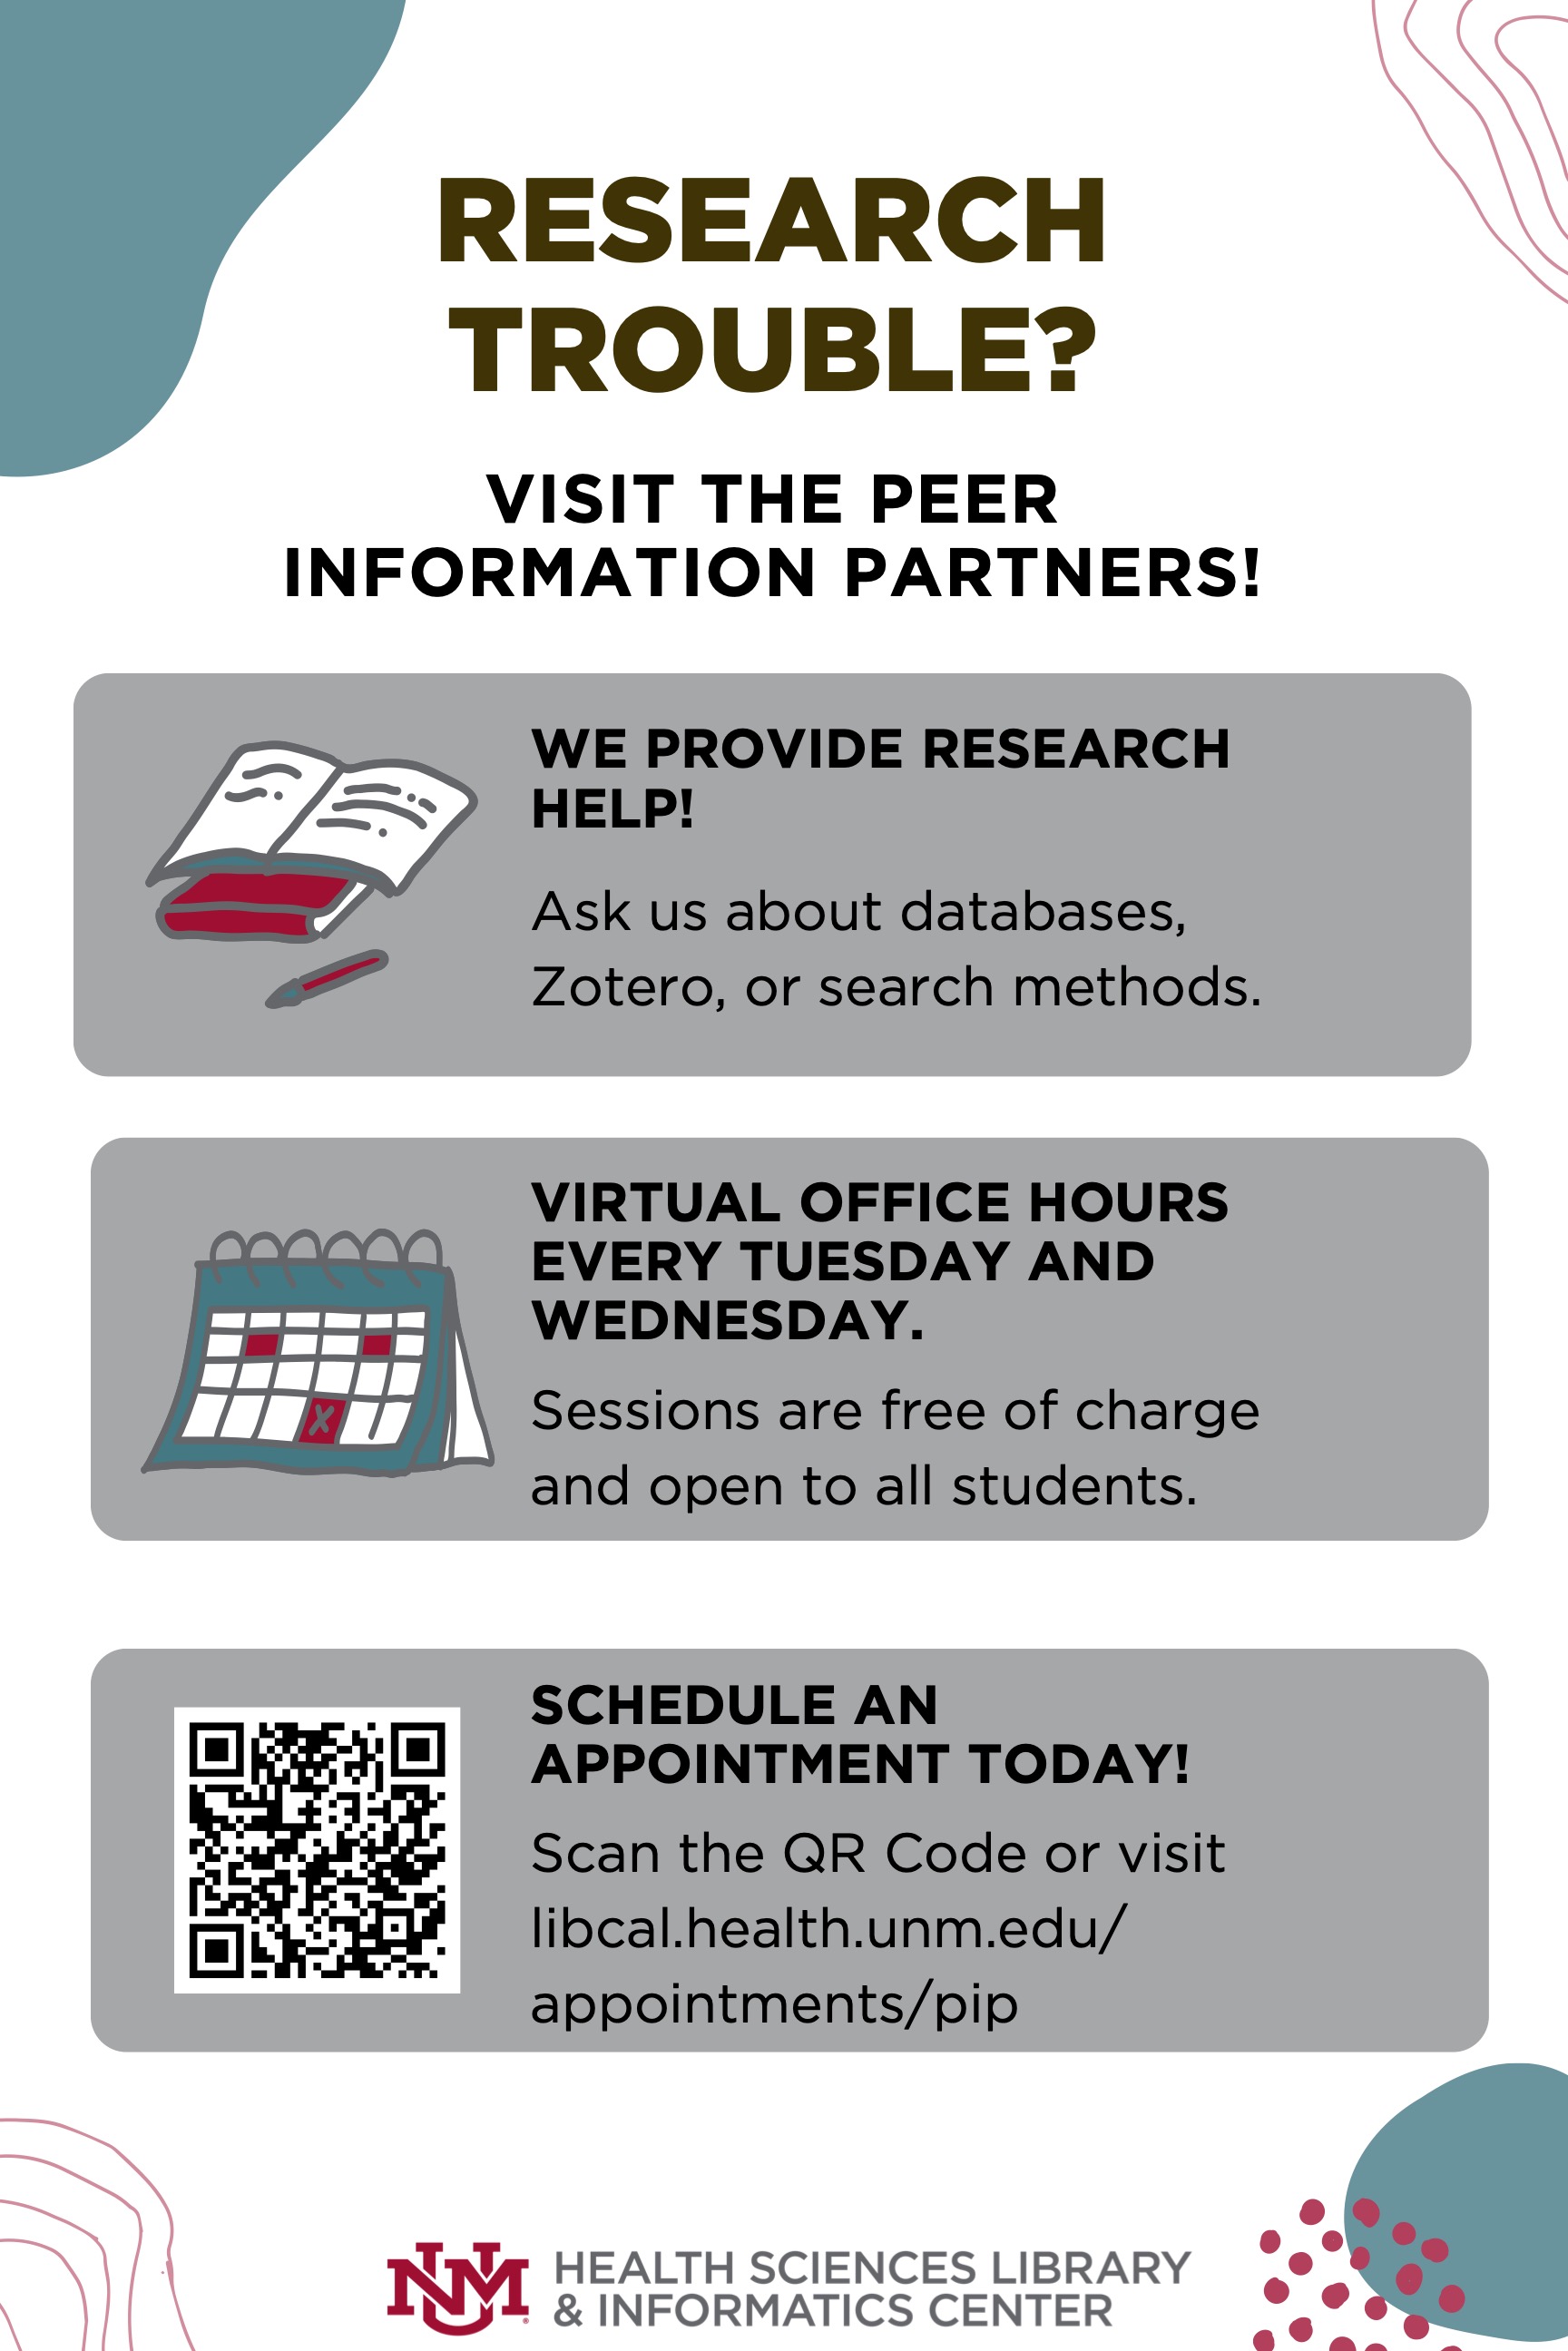 Peer Information Partners での研究支援のフライヤー。セッションは無料で、毎週火曜日と水曜日の仮想オフィスアワーです。 詳細については、libcal.health.unm.edu/appointments/pip をご覧ください。